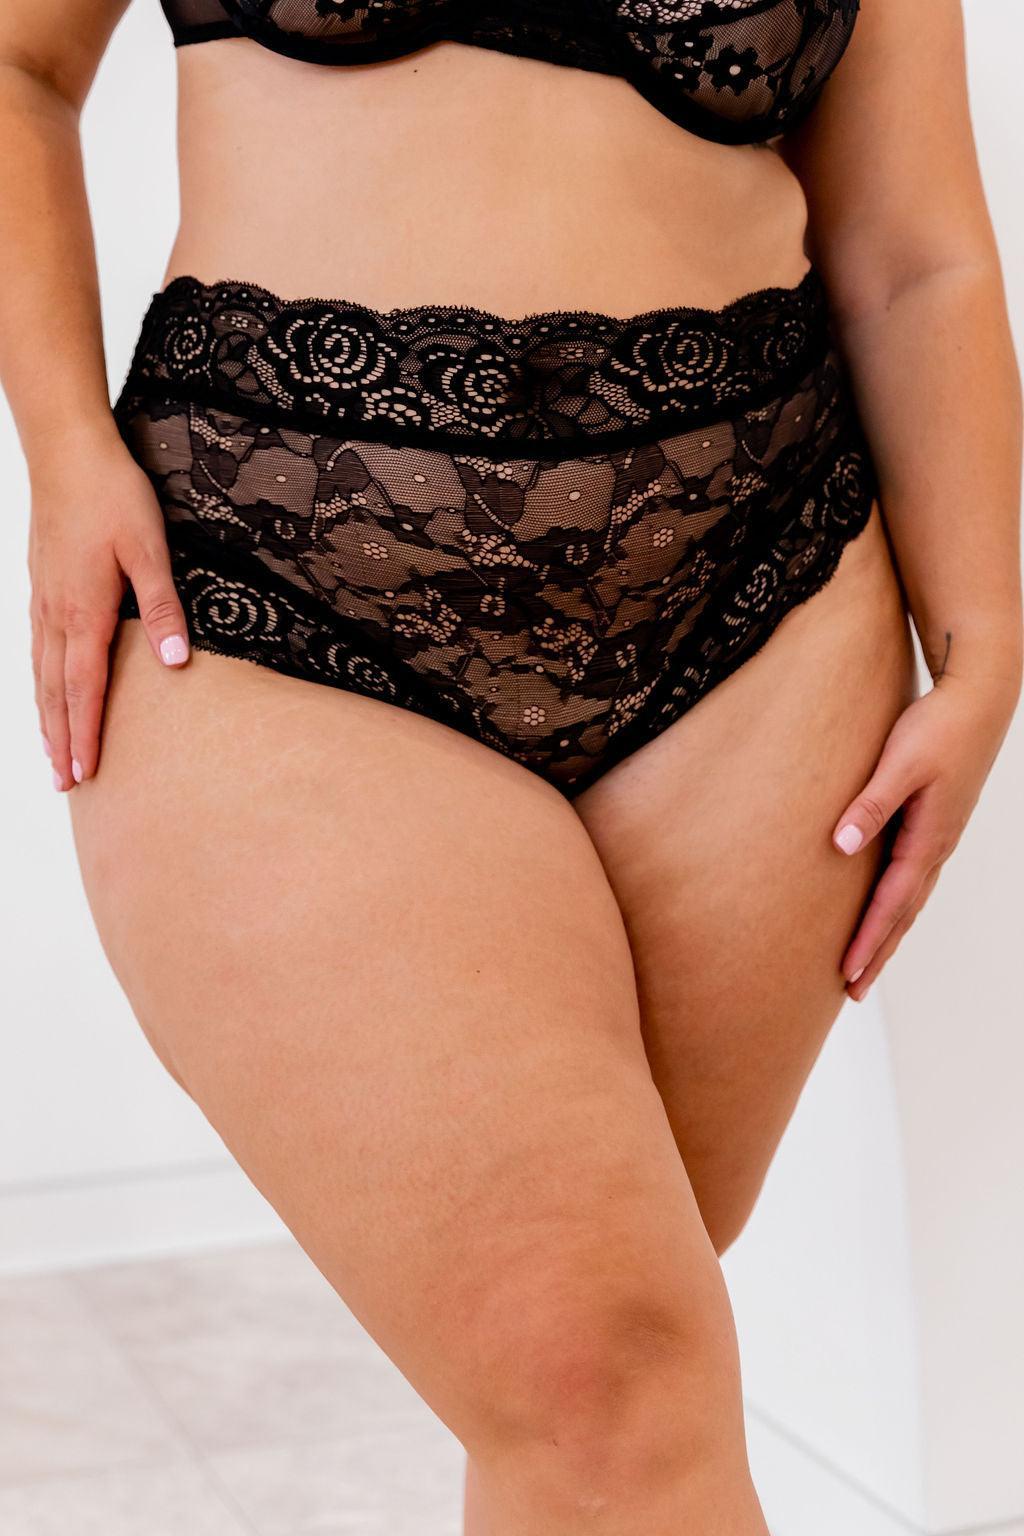 Heidi Black Lace Briefs - $18.00 - Underwear - Naked Curve